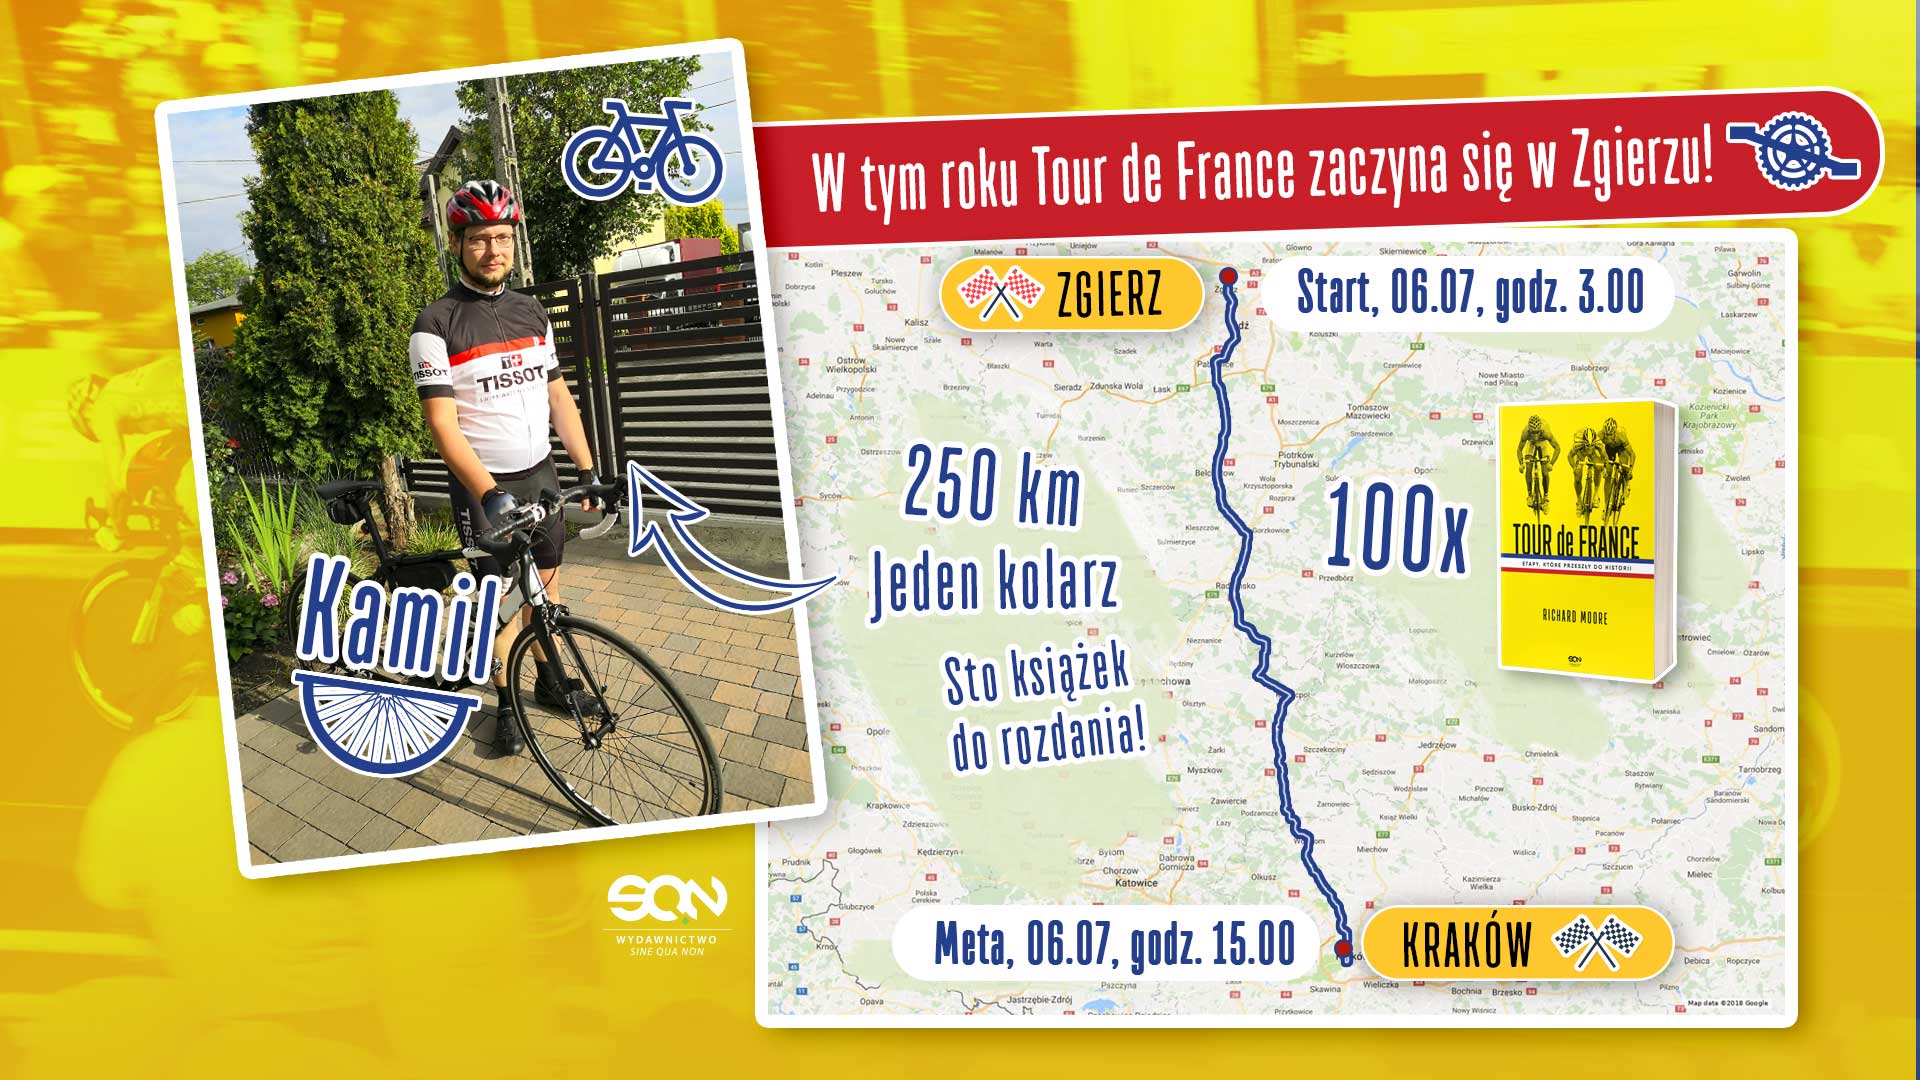 Tour de France startuje… w Zgierzu! SQN rozdaje 100 książek